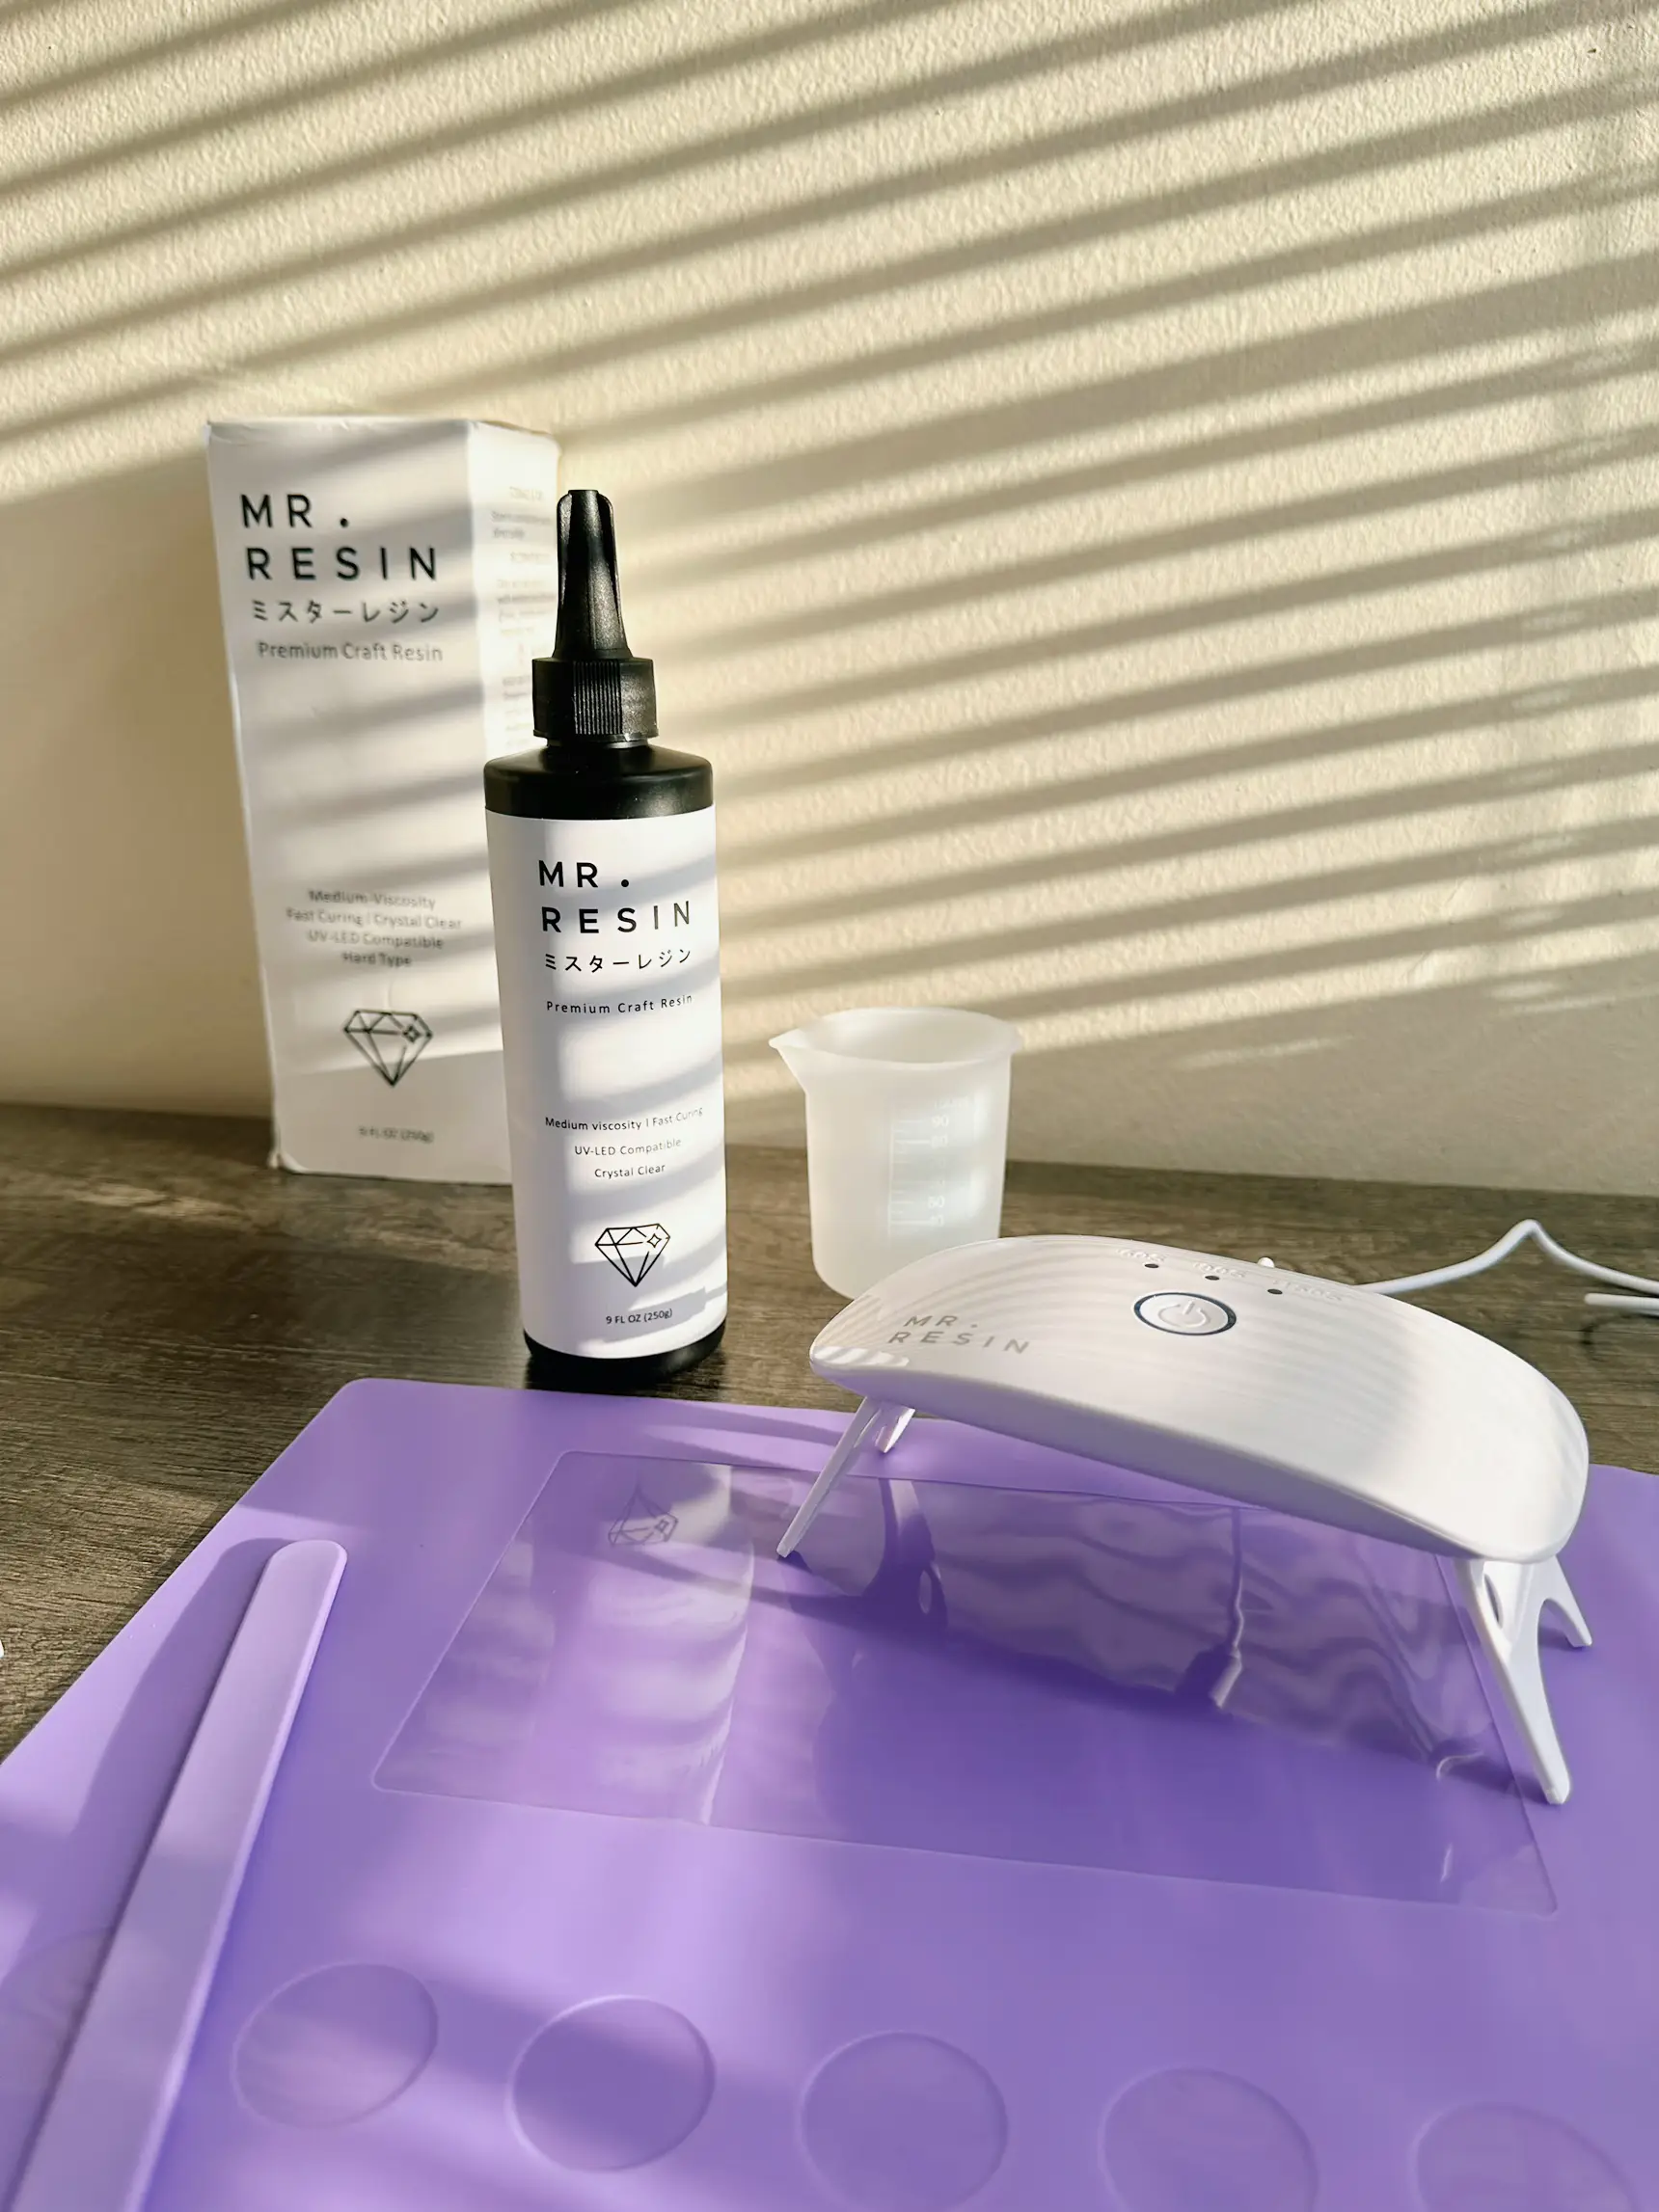 UV Resin Kit - Mr. Resin 250g Crystal Clear Resin (Starters Kit) +